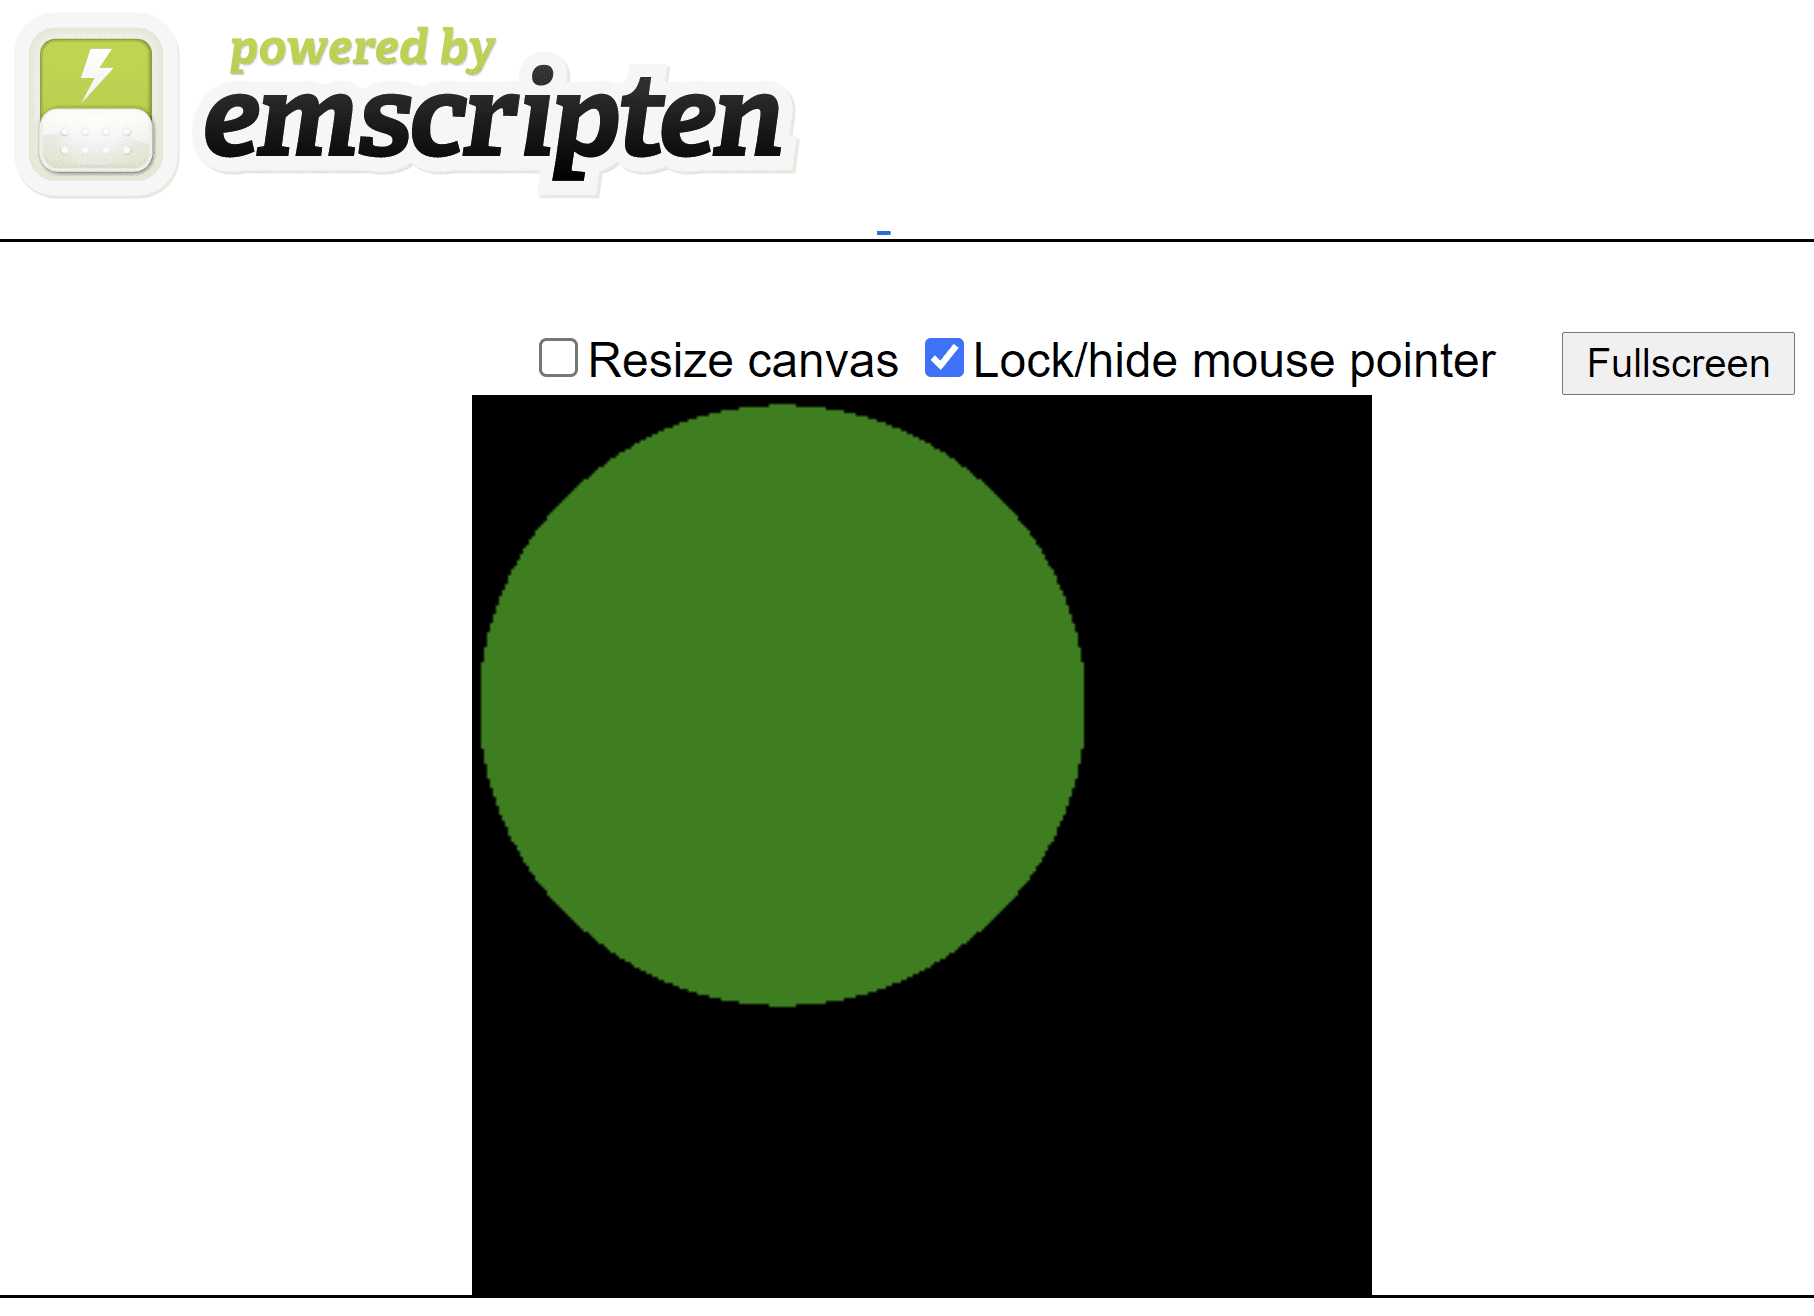 Página HTML gerada pelo Emscripten mostrando um círculo verde em uma tela quadrada preta.